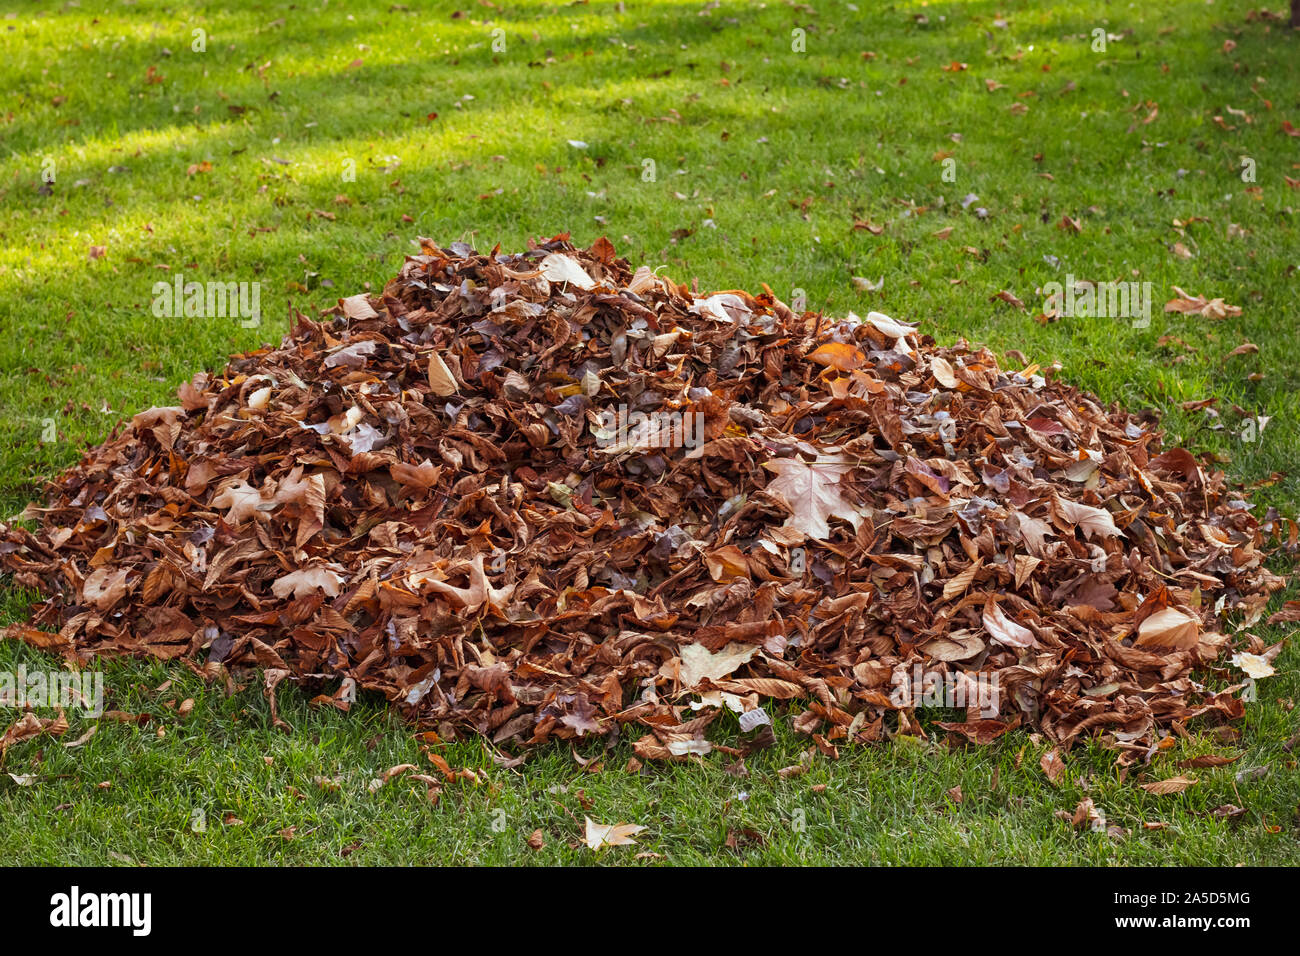 Foglia caduta il clean-up. Un mucchio di foglie cadute sul prato. Per la pulizia del territorio. Foto Stock